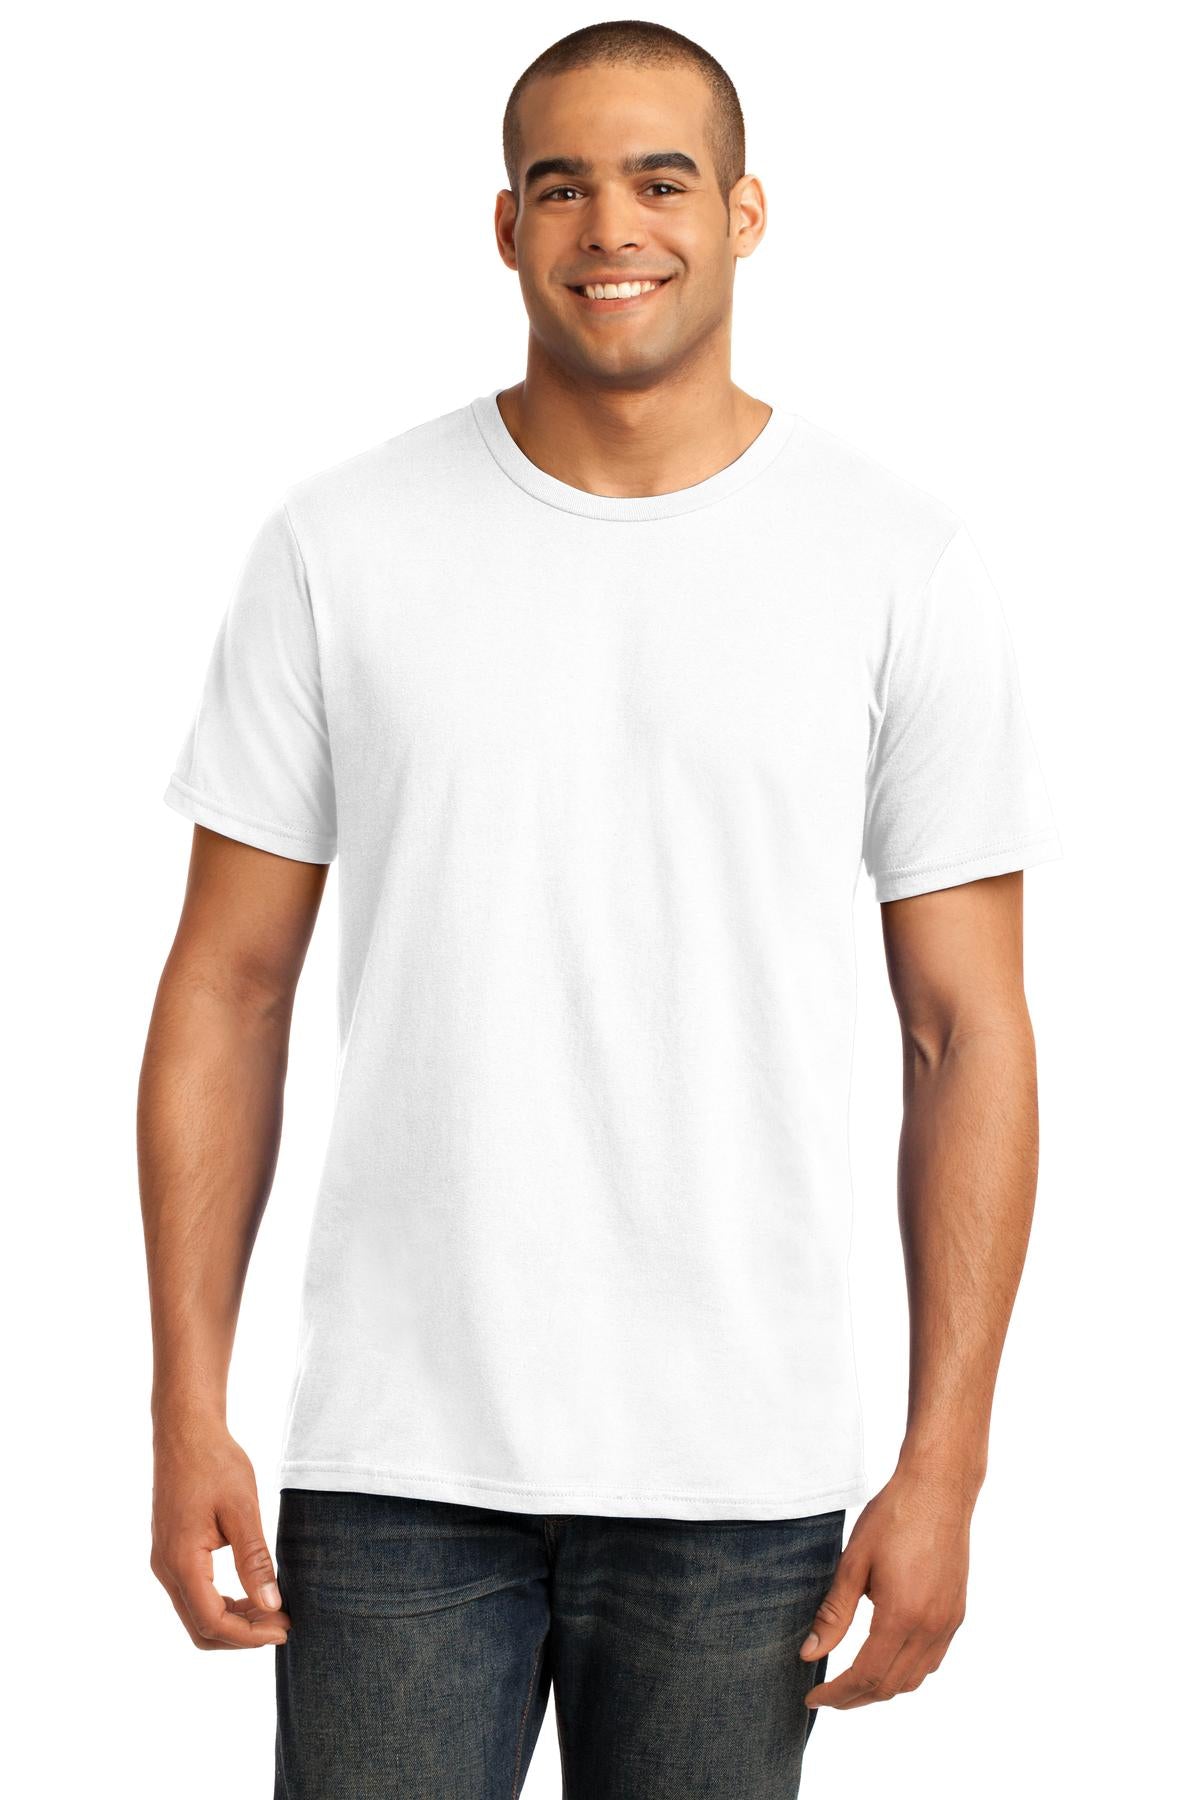 Gildan 100% Ring Spun Cotton T-Shirt. 980